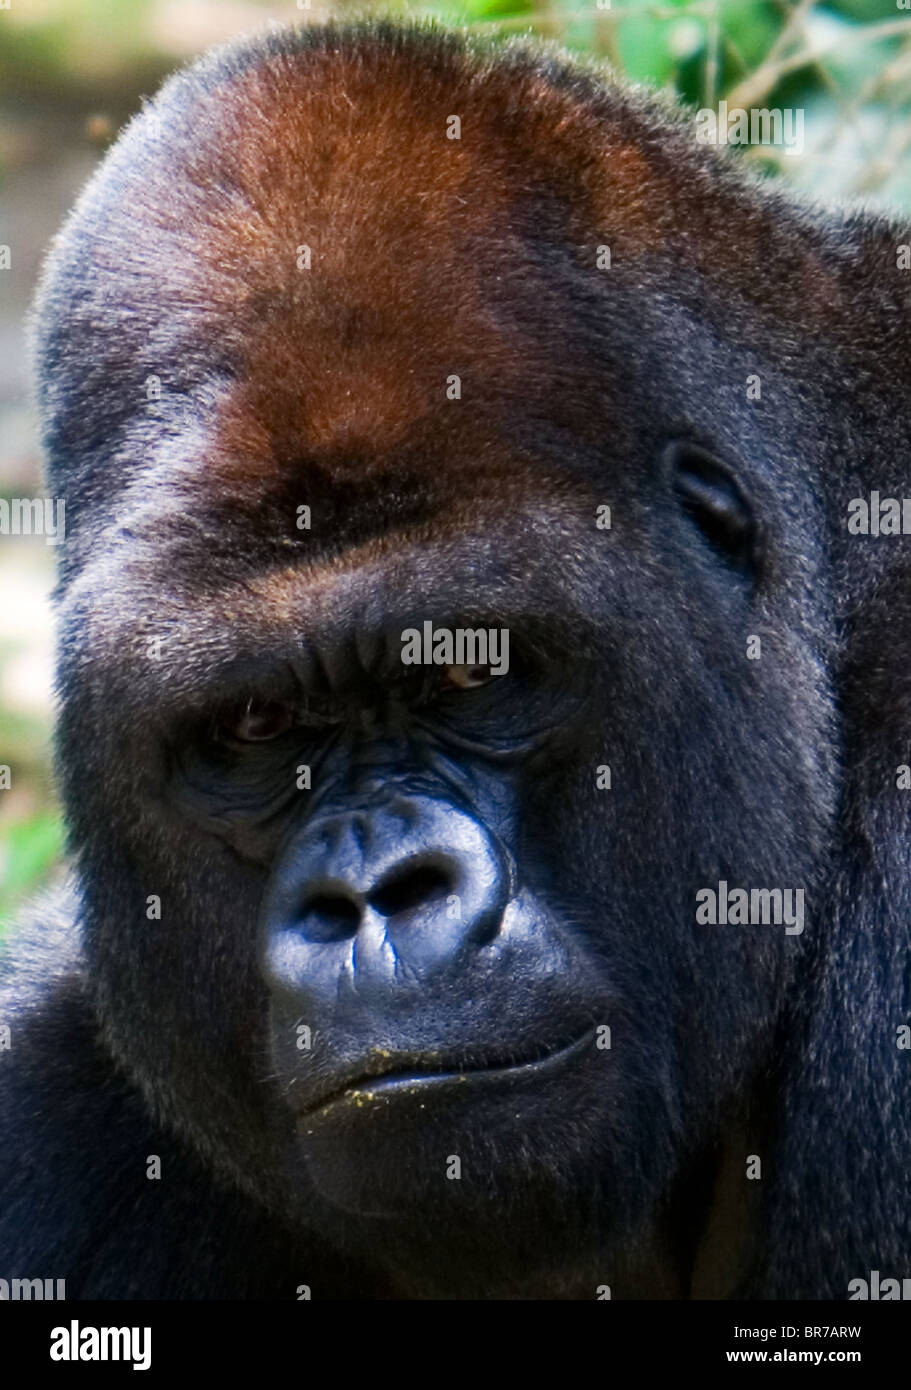 Gorila de las tierras bajas occidentales cerca de la cara Foto de stock